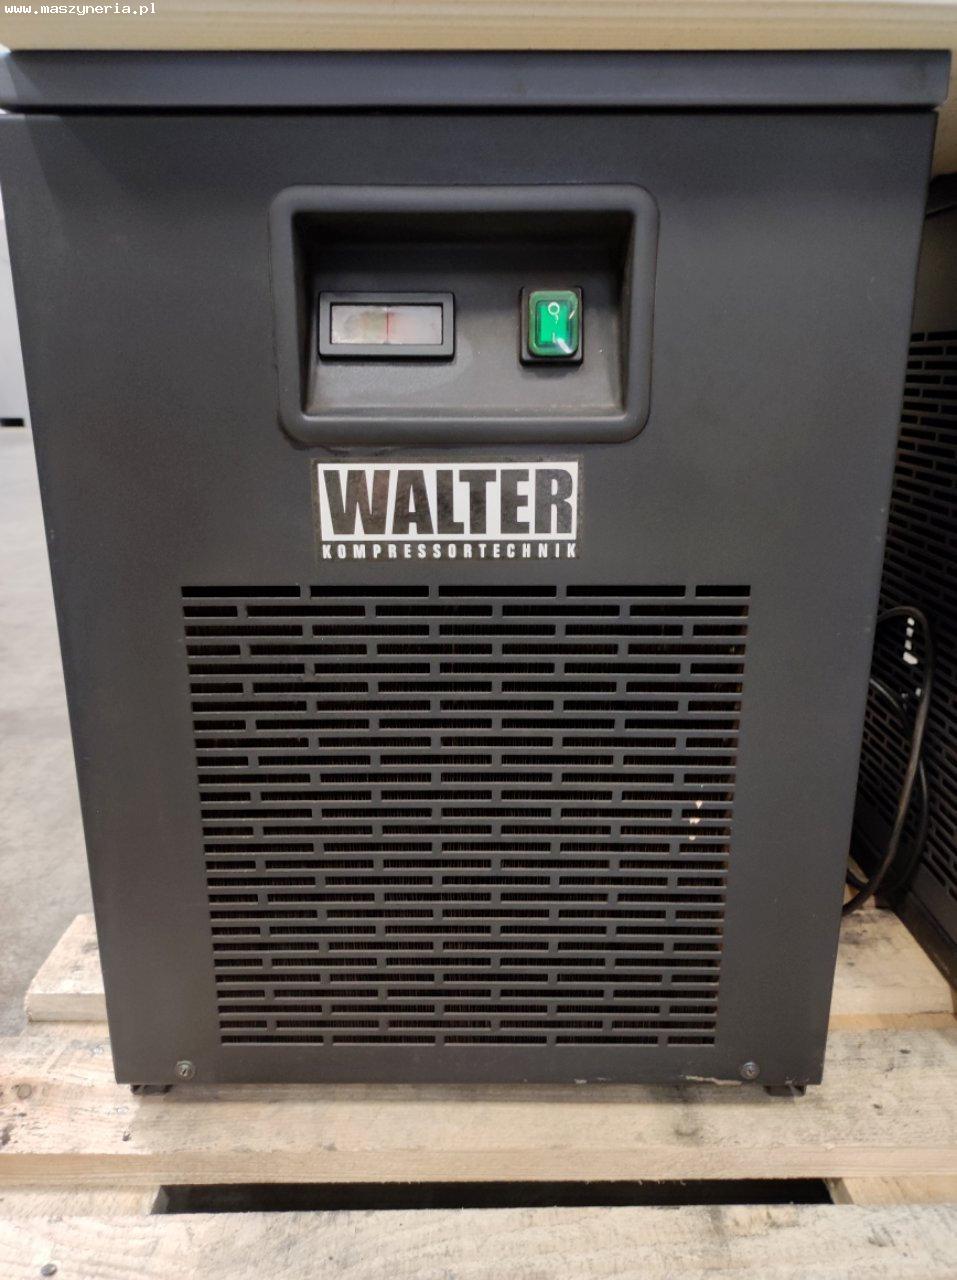 Essiccatore a refrigerazione WALTER VT 220 in vendita - foto 1